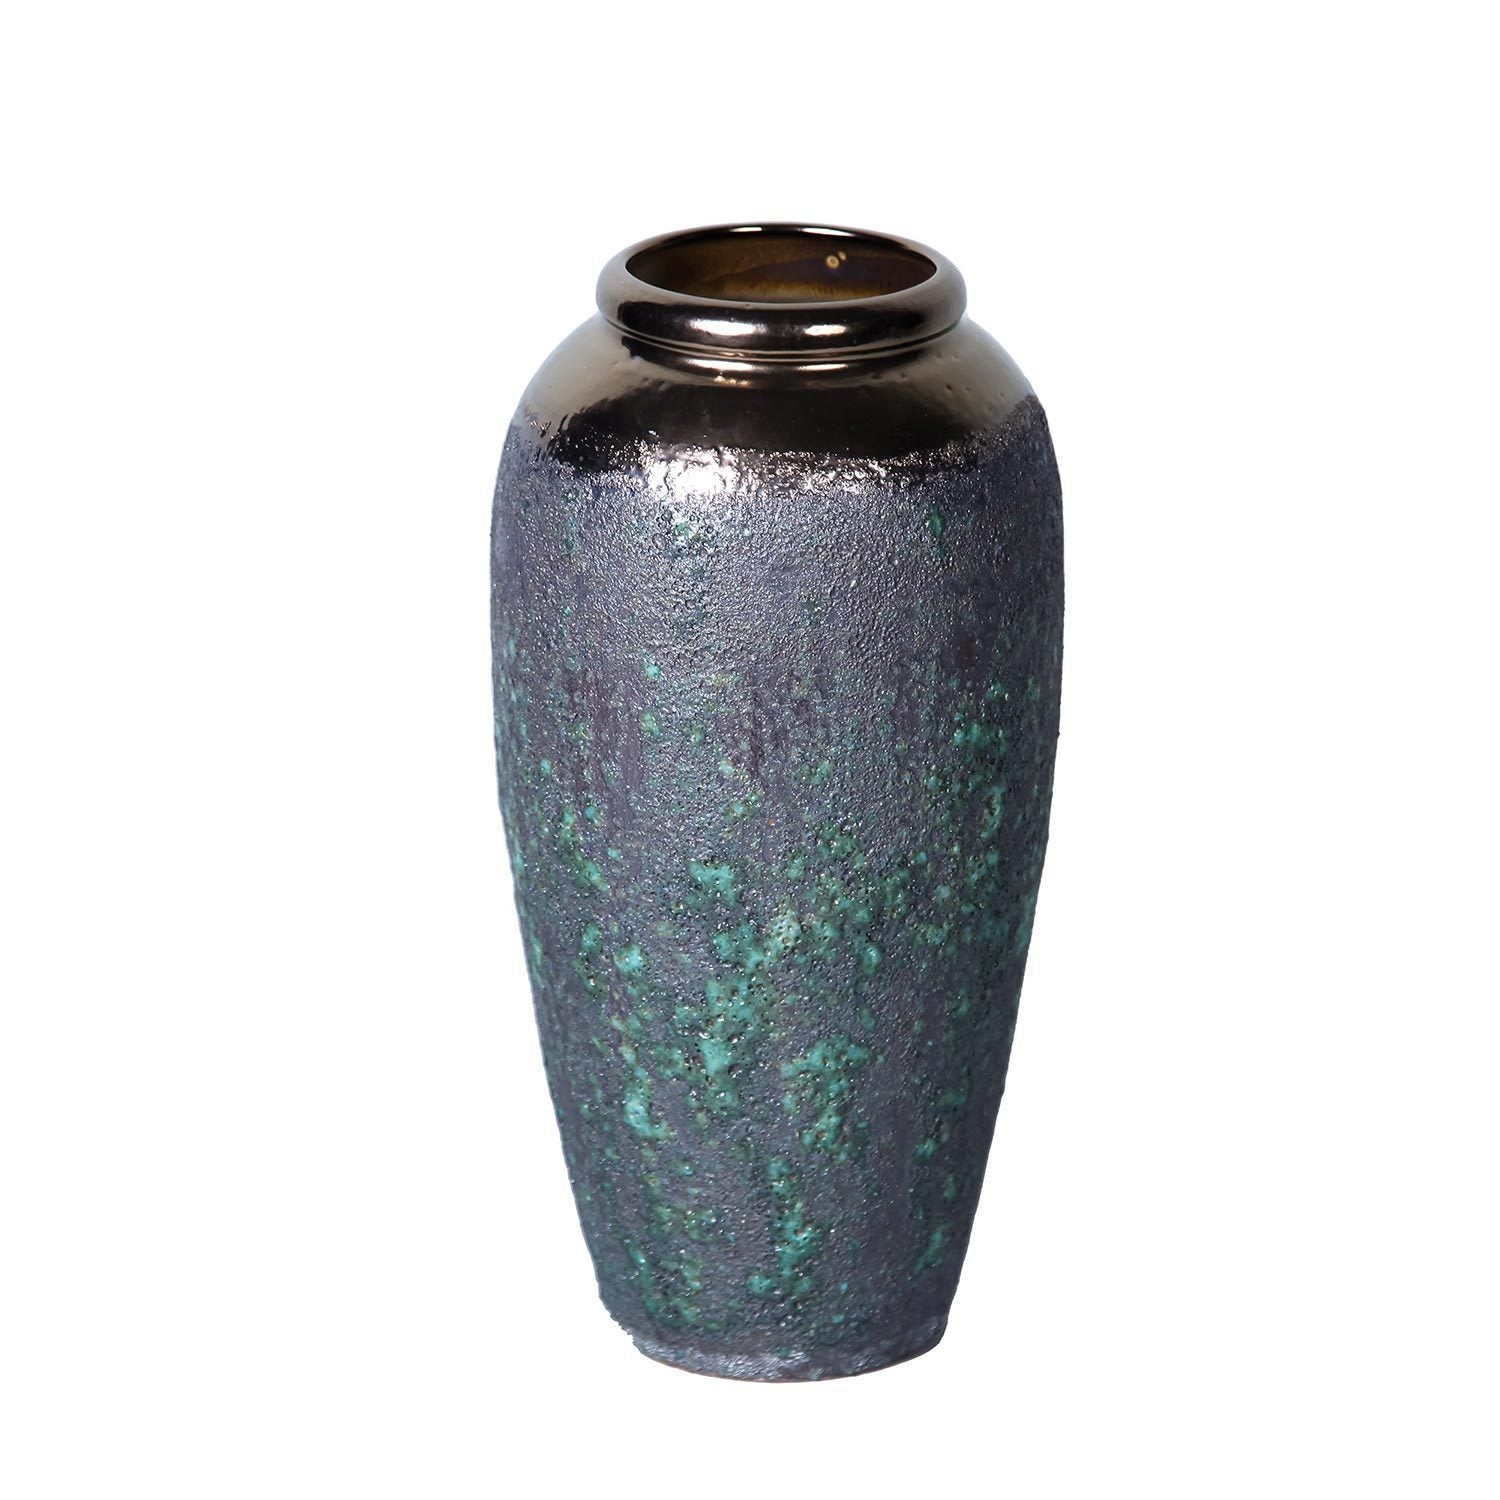 Artisanal Vintage Smoke Ceramic Vase 7"D x 14"H